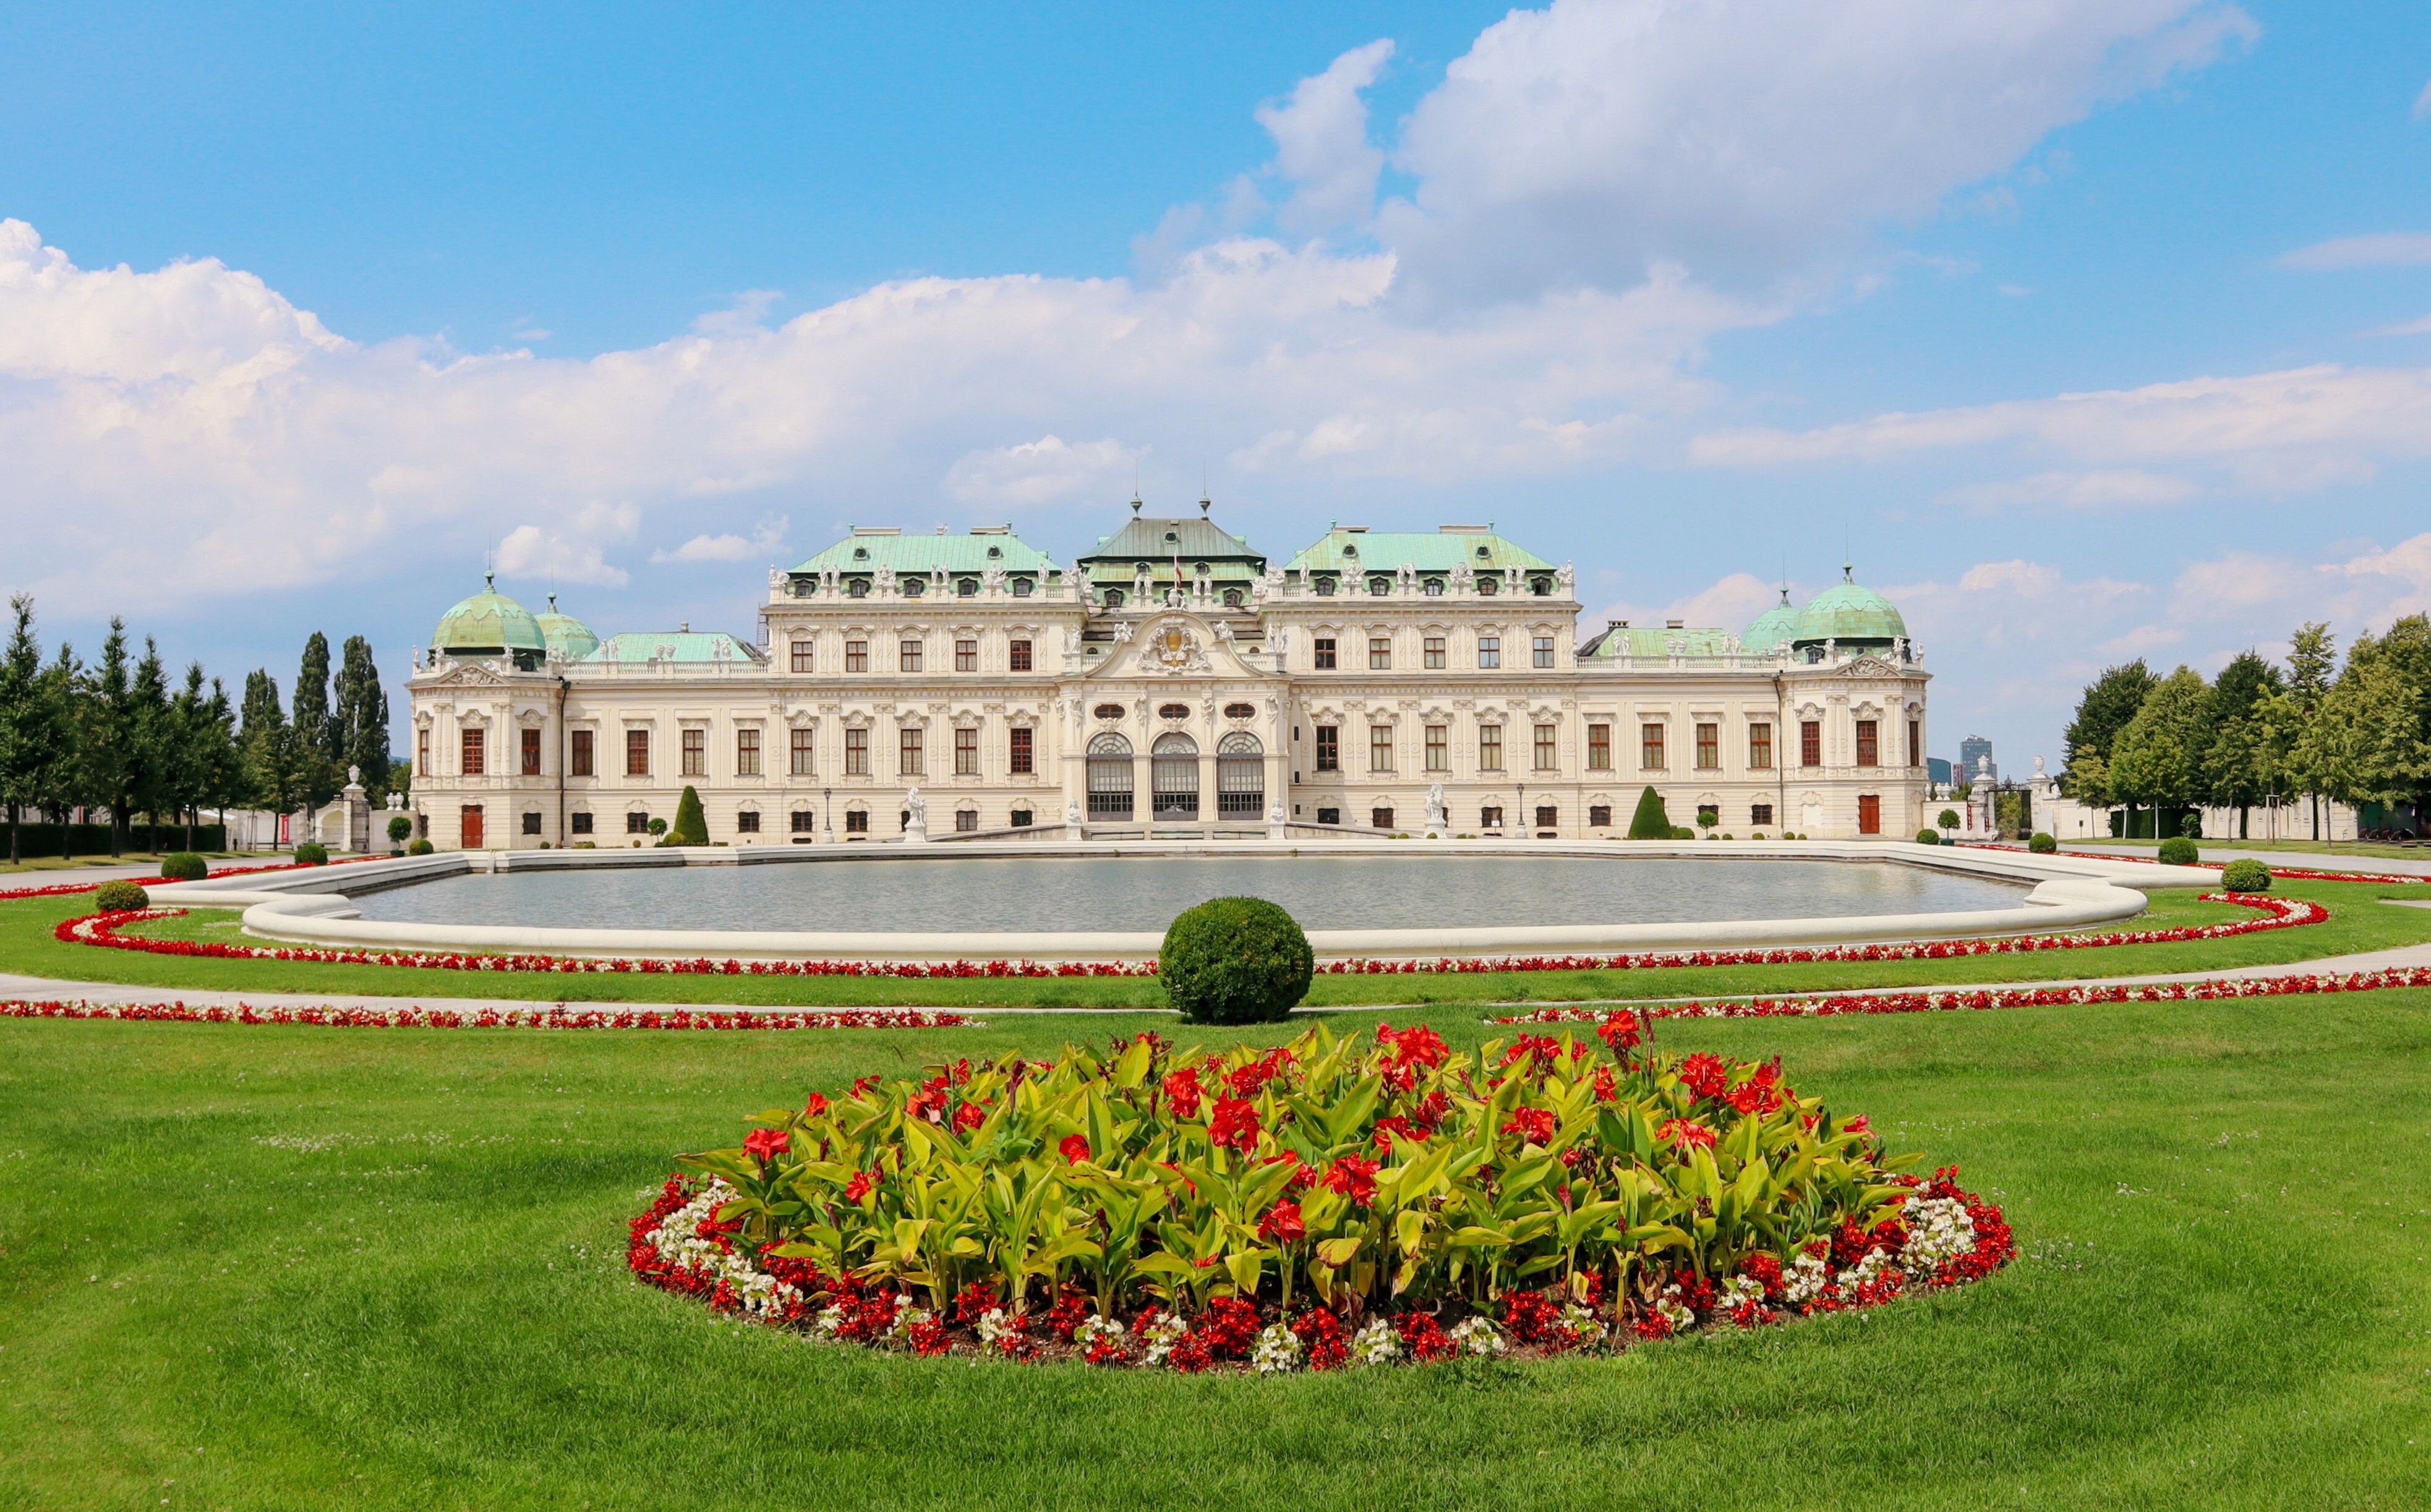 Zuge Wien-Bratislava: Das beruhmte Schloss Belvedere